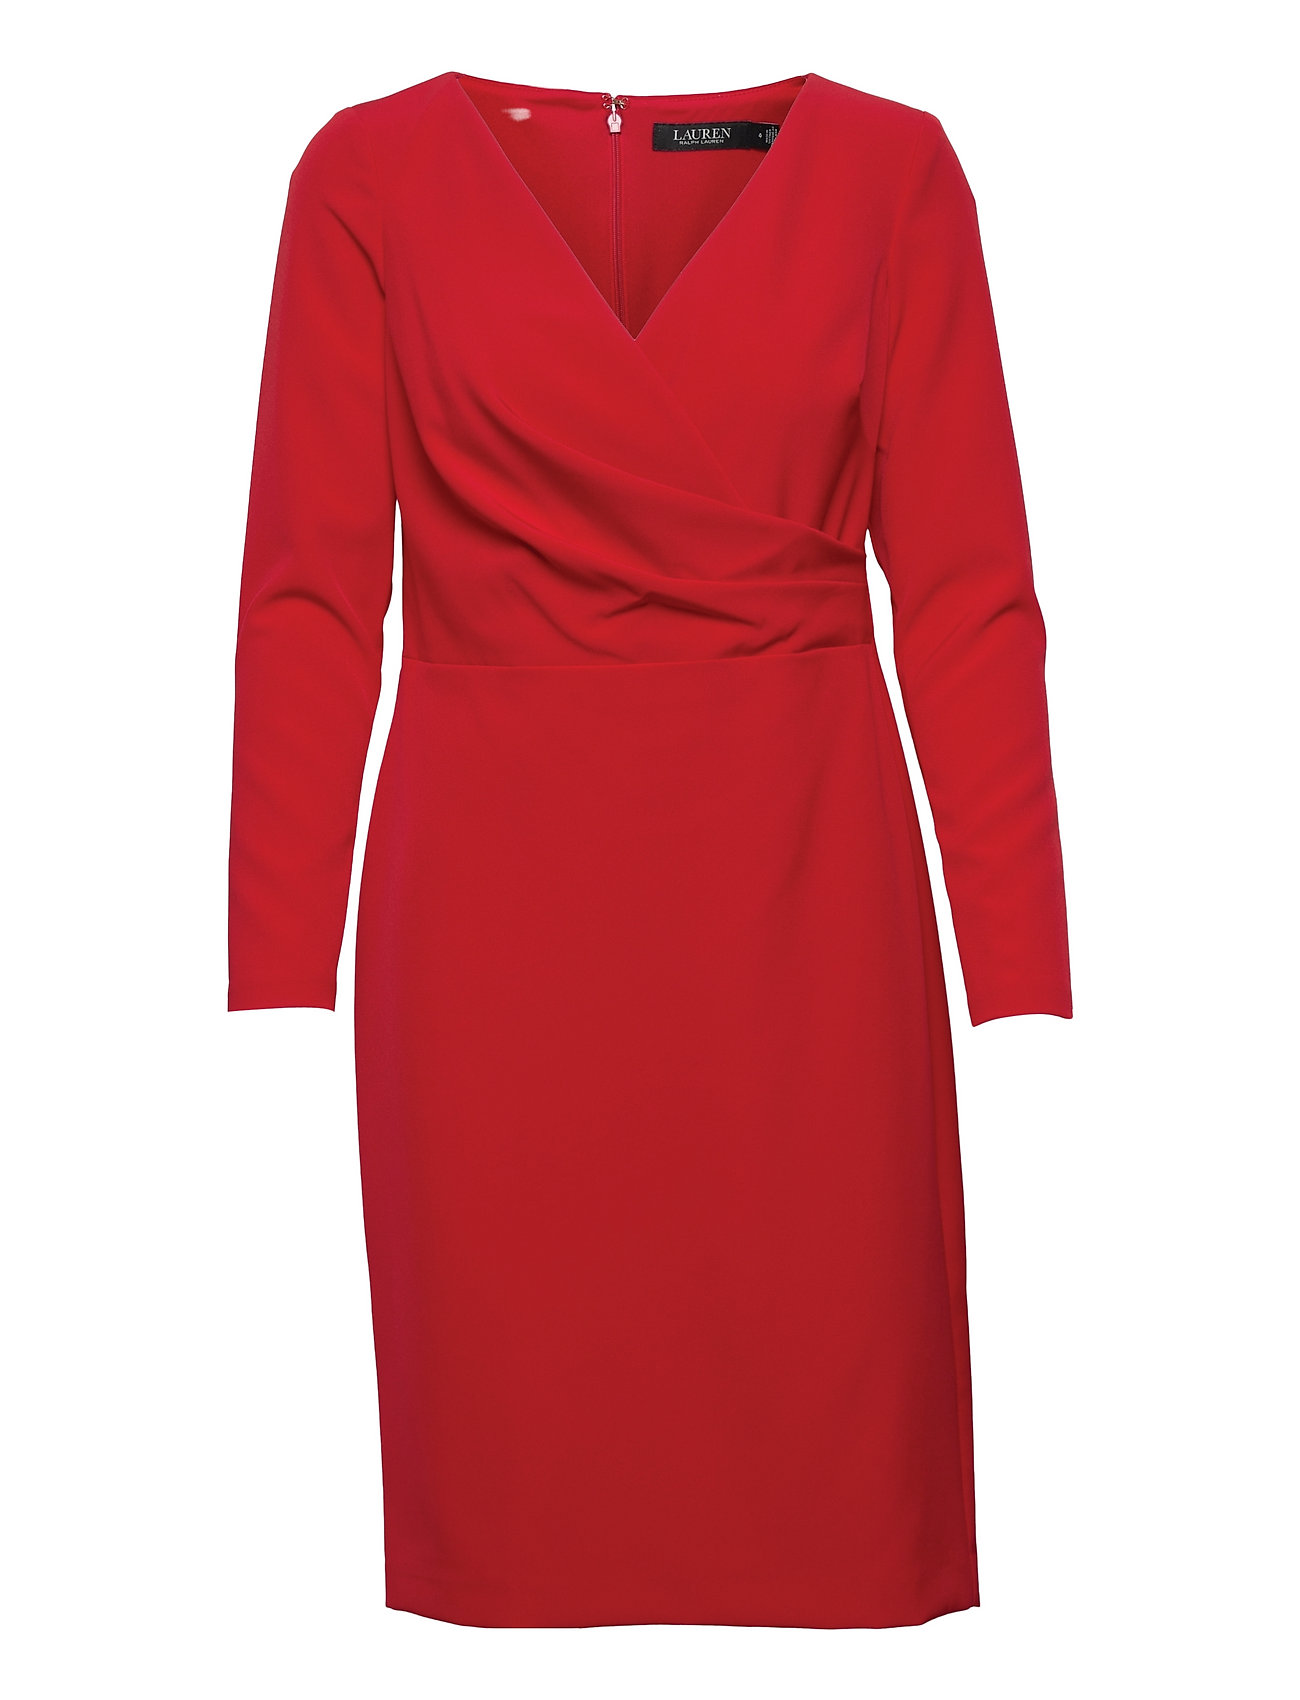 Ralph Lauren Dress - kjoler - Boozt.com